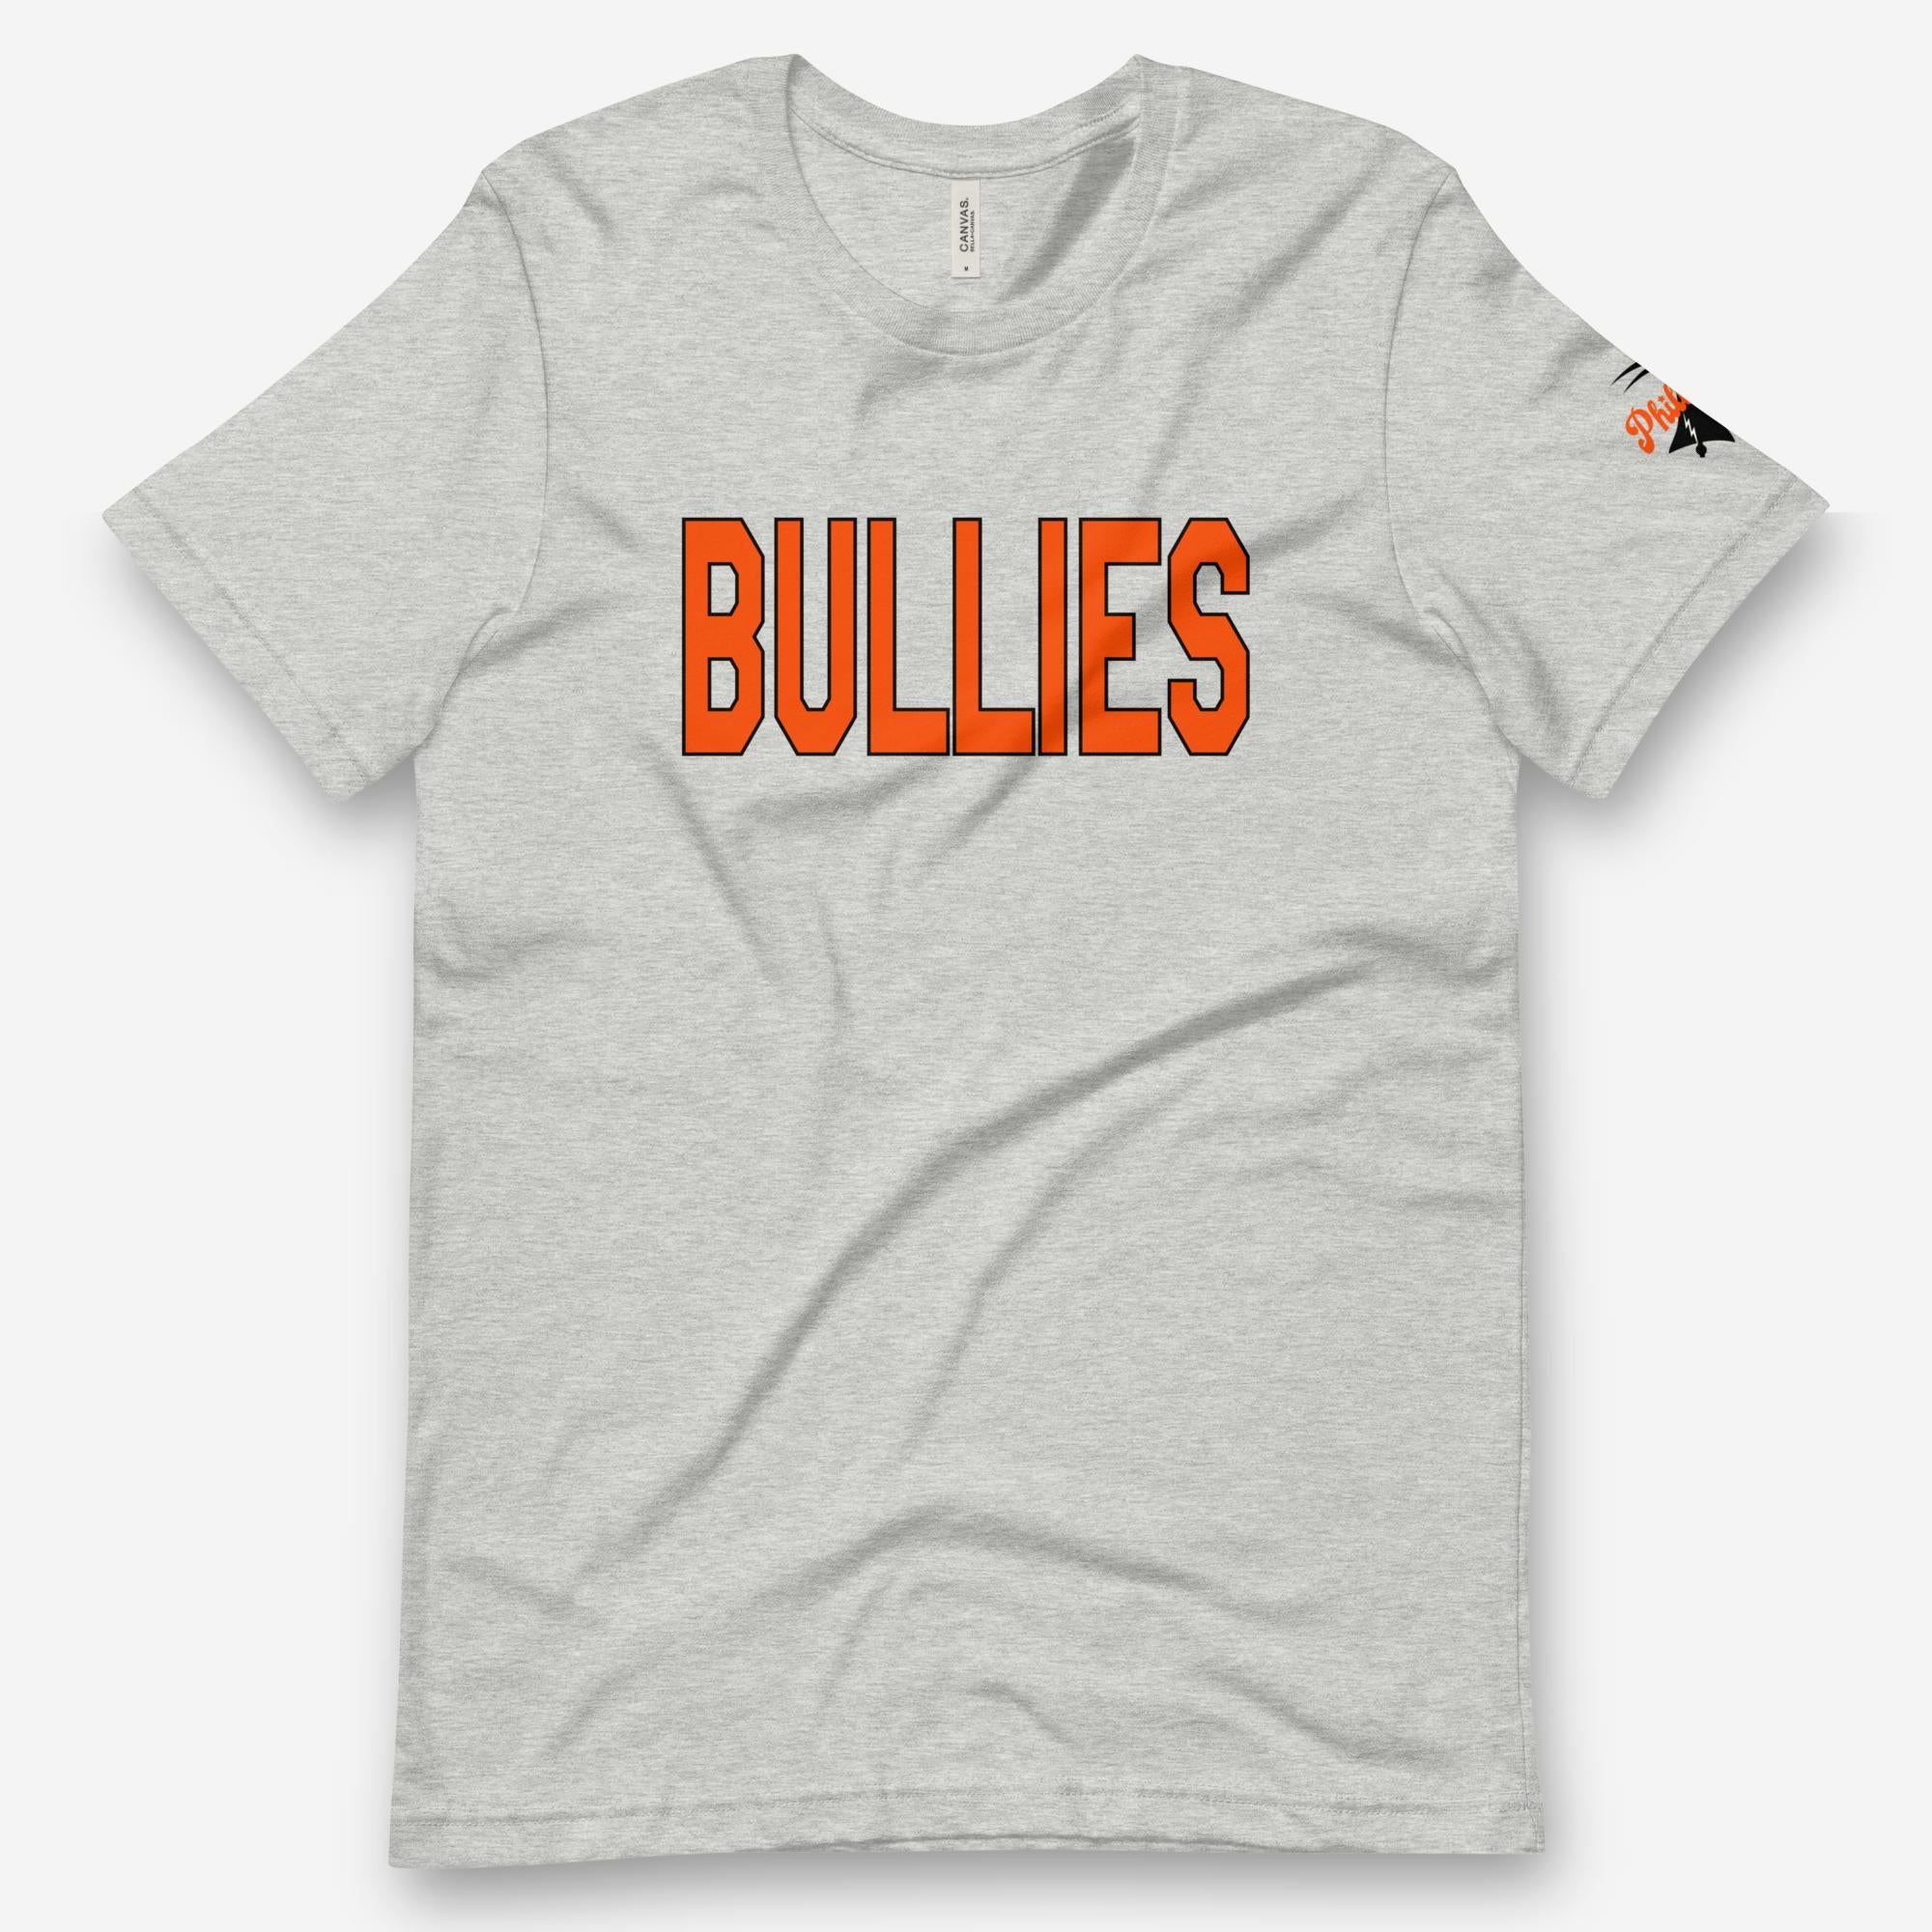 "Bullies" Tee